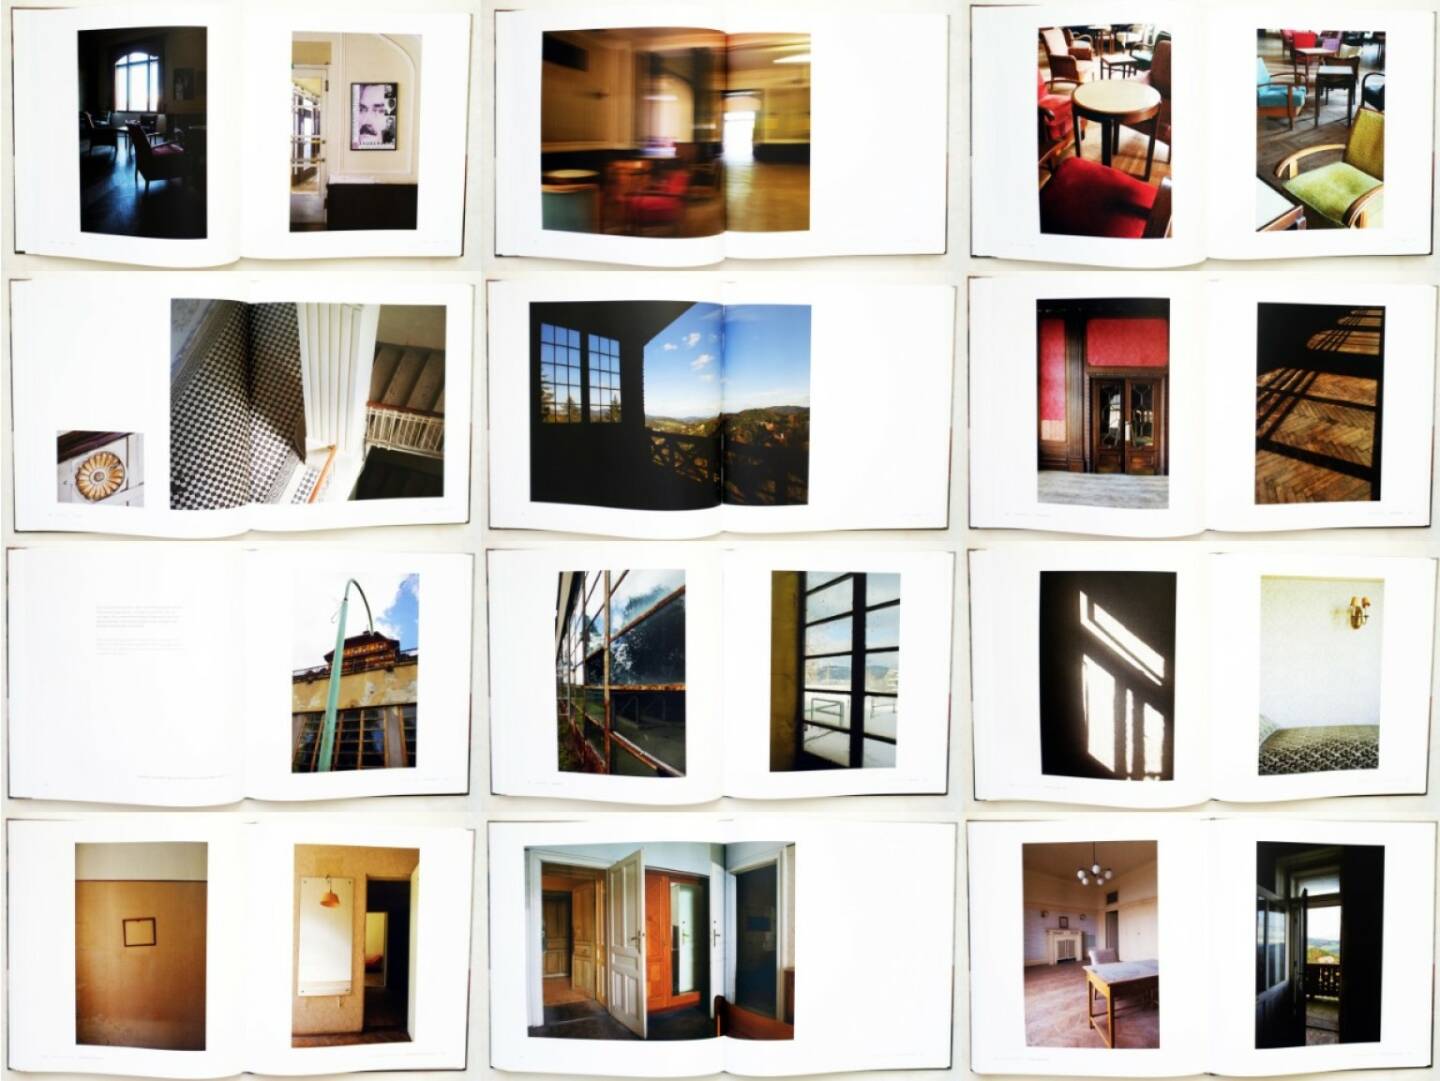 Yvonne Oswald - Das Südbahnhotel, Metroverlag 2014, Beispielseiten, sample spreads - http://josefchladek.com/book/yvonne_oswald_-_das_sudbahnhotel_-_am_zauberberg_des_wiener_fin_de_sieclethe_magic_mountain_of_viennas_fin_de_siecle